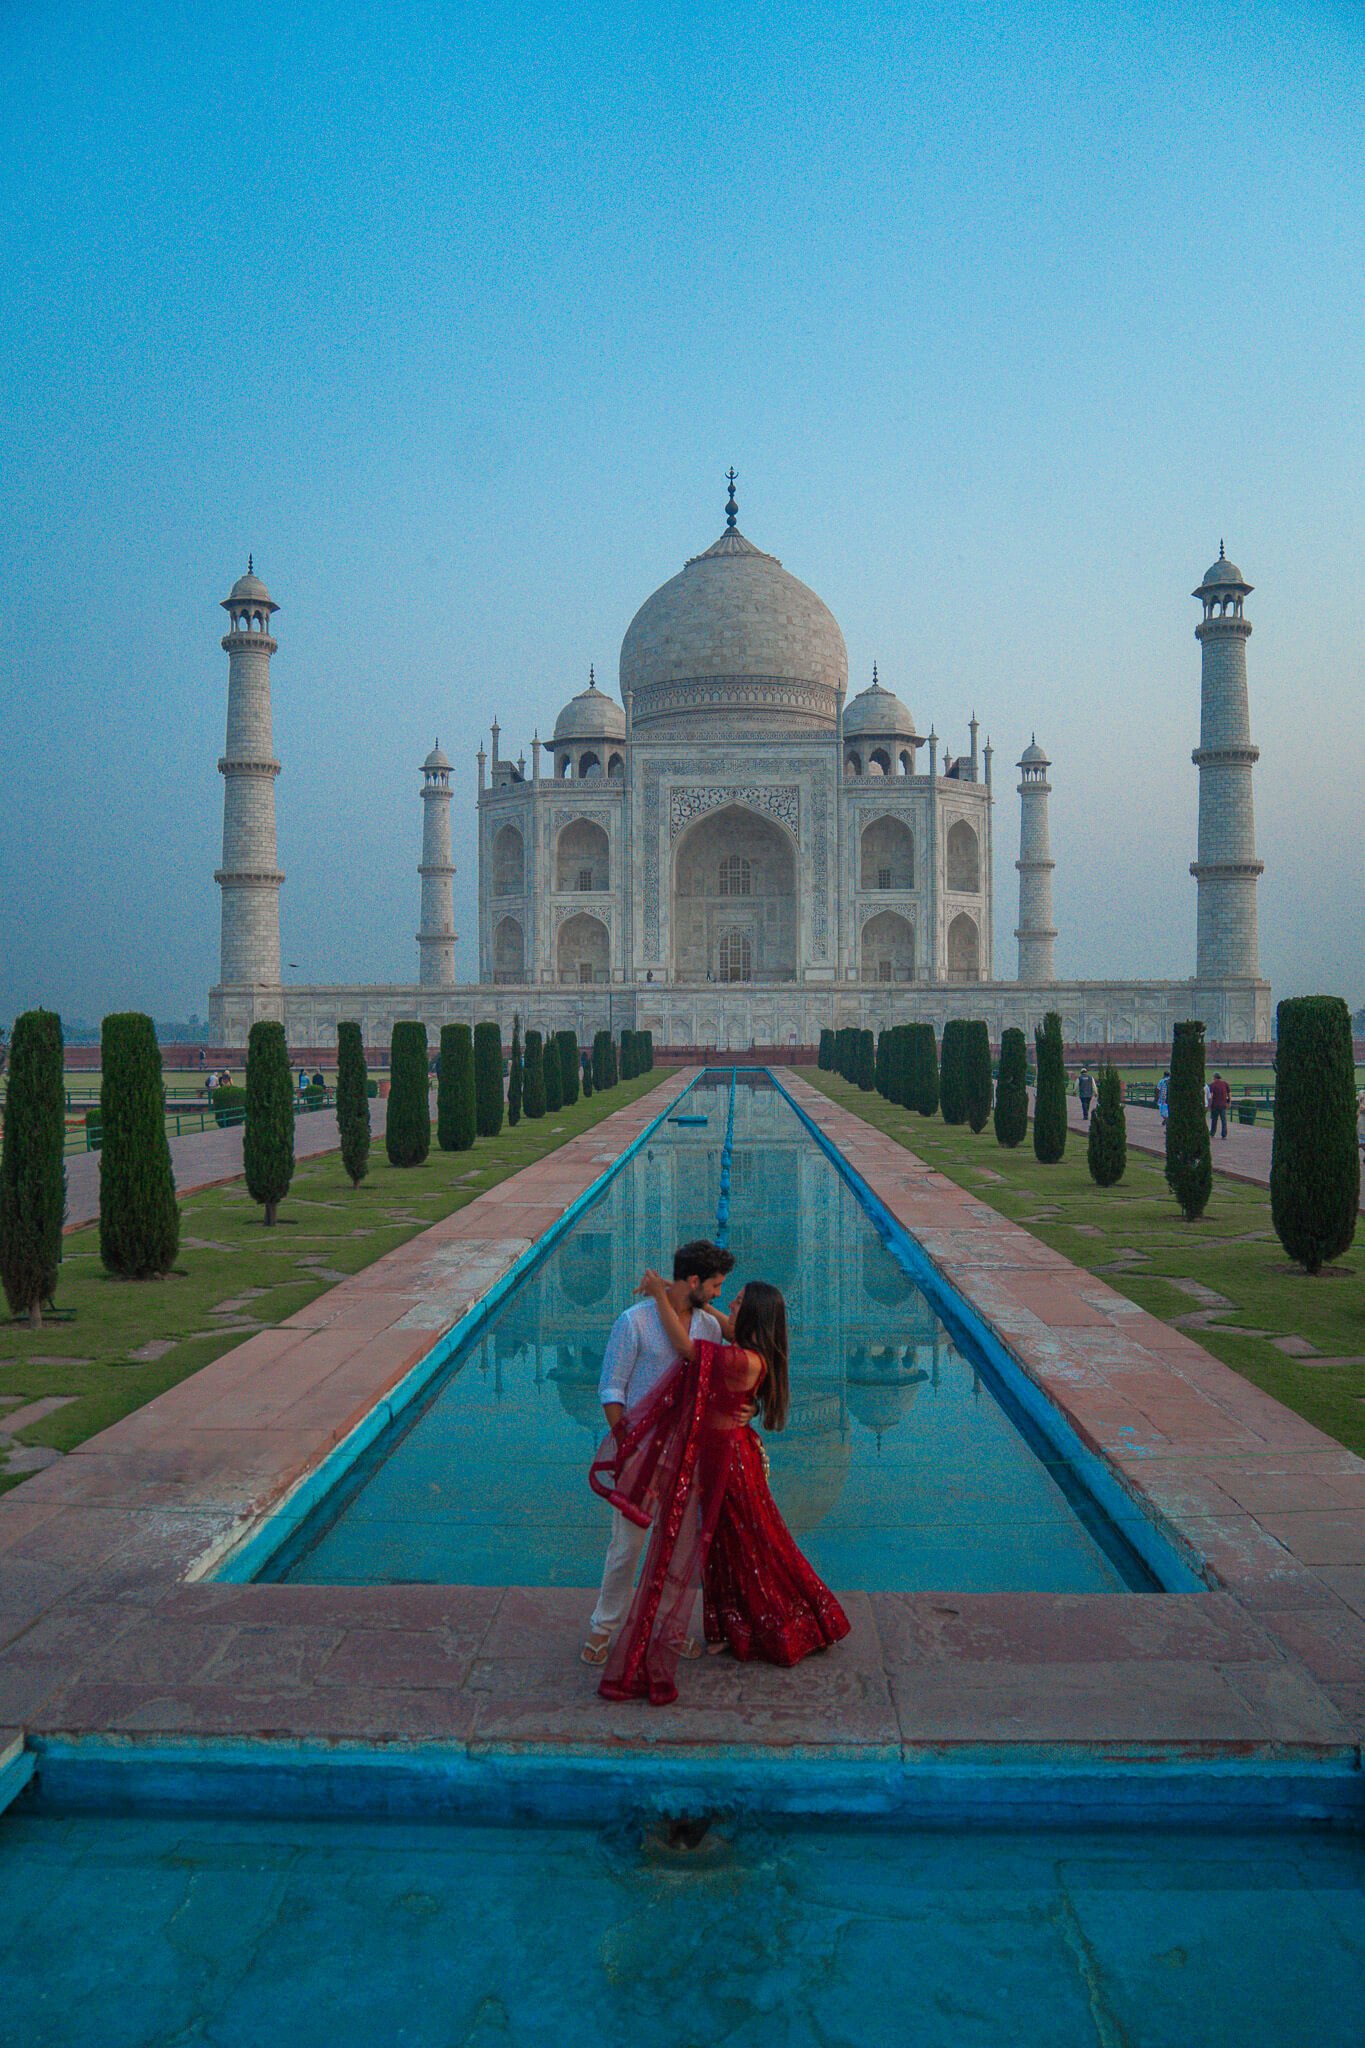 Visiting the Taj Mahal in India